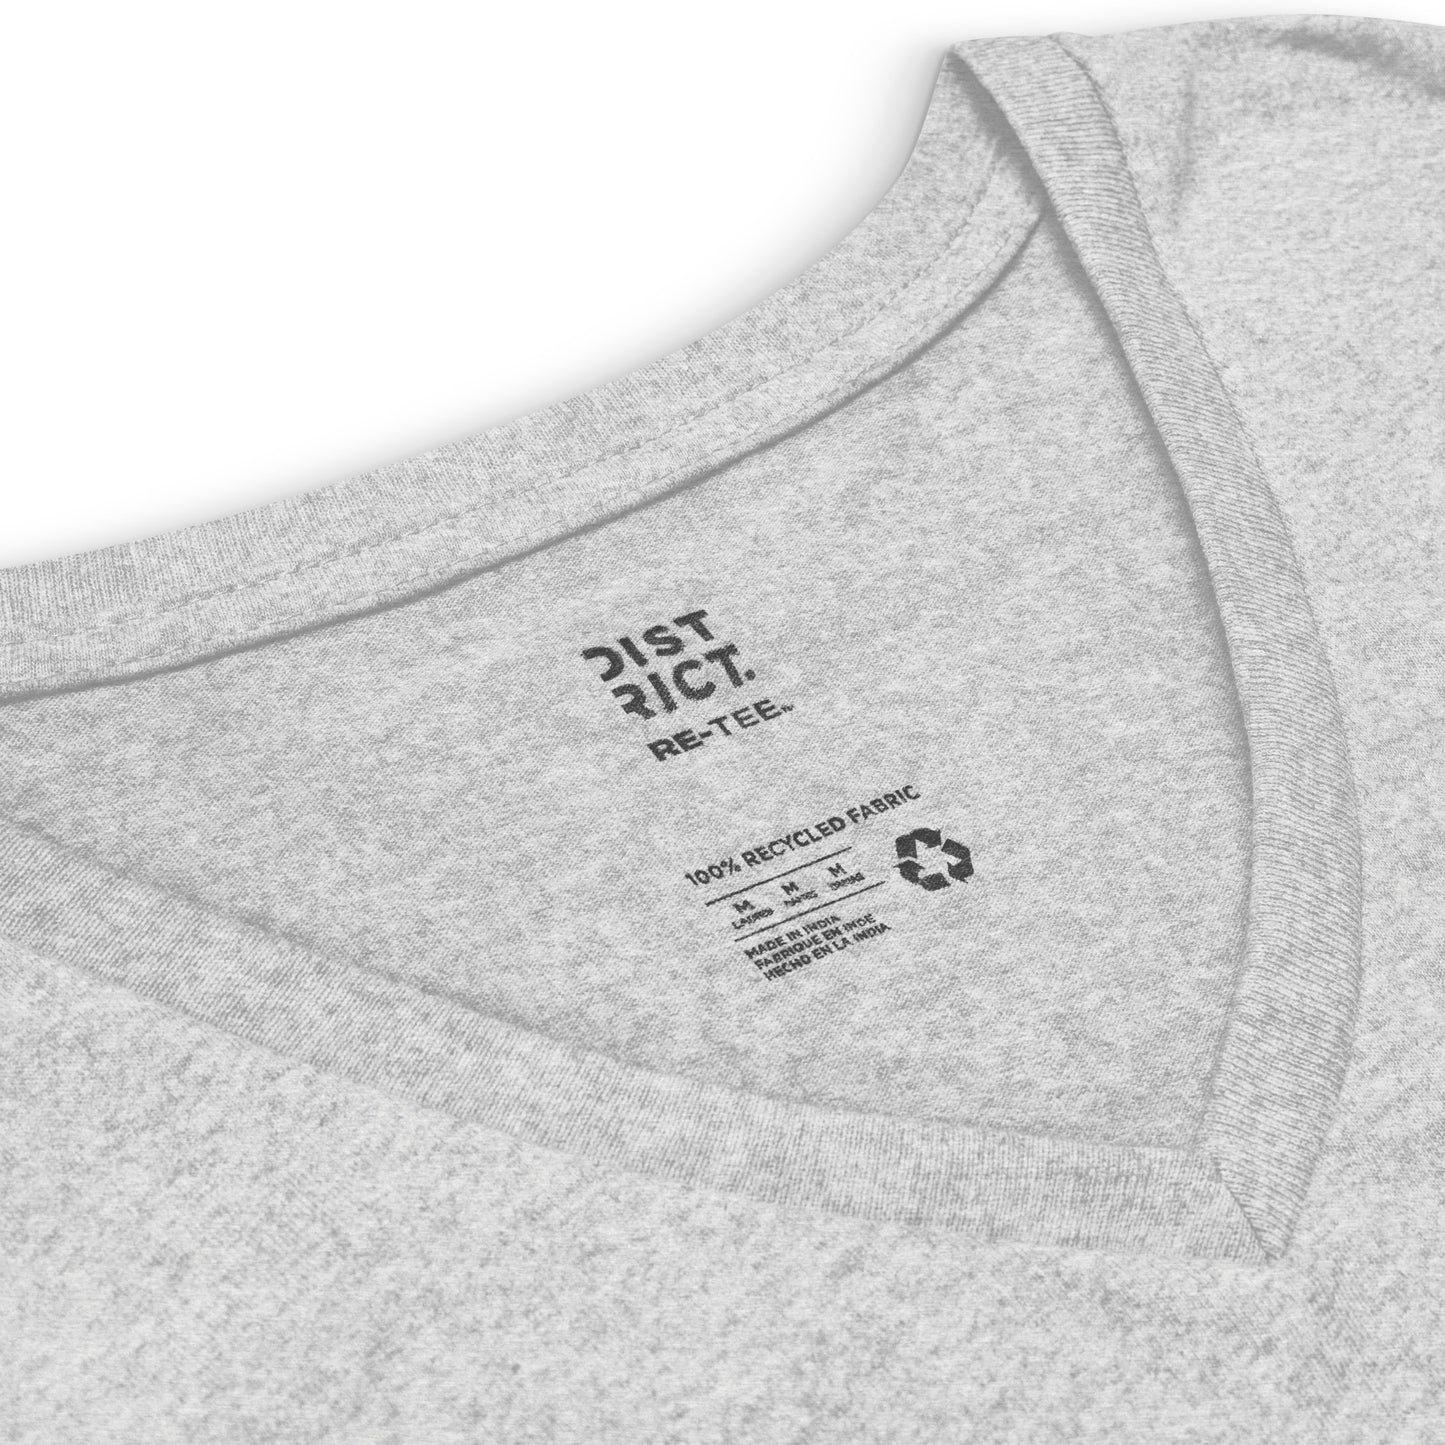 Women’s recycled v-neck t-shirt | #grandM.O.M.